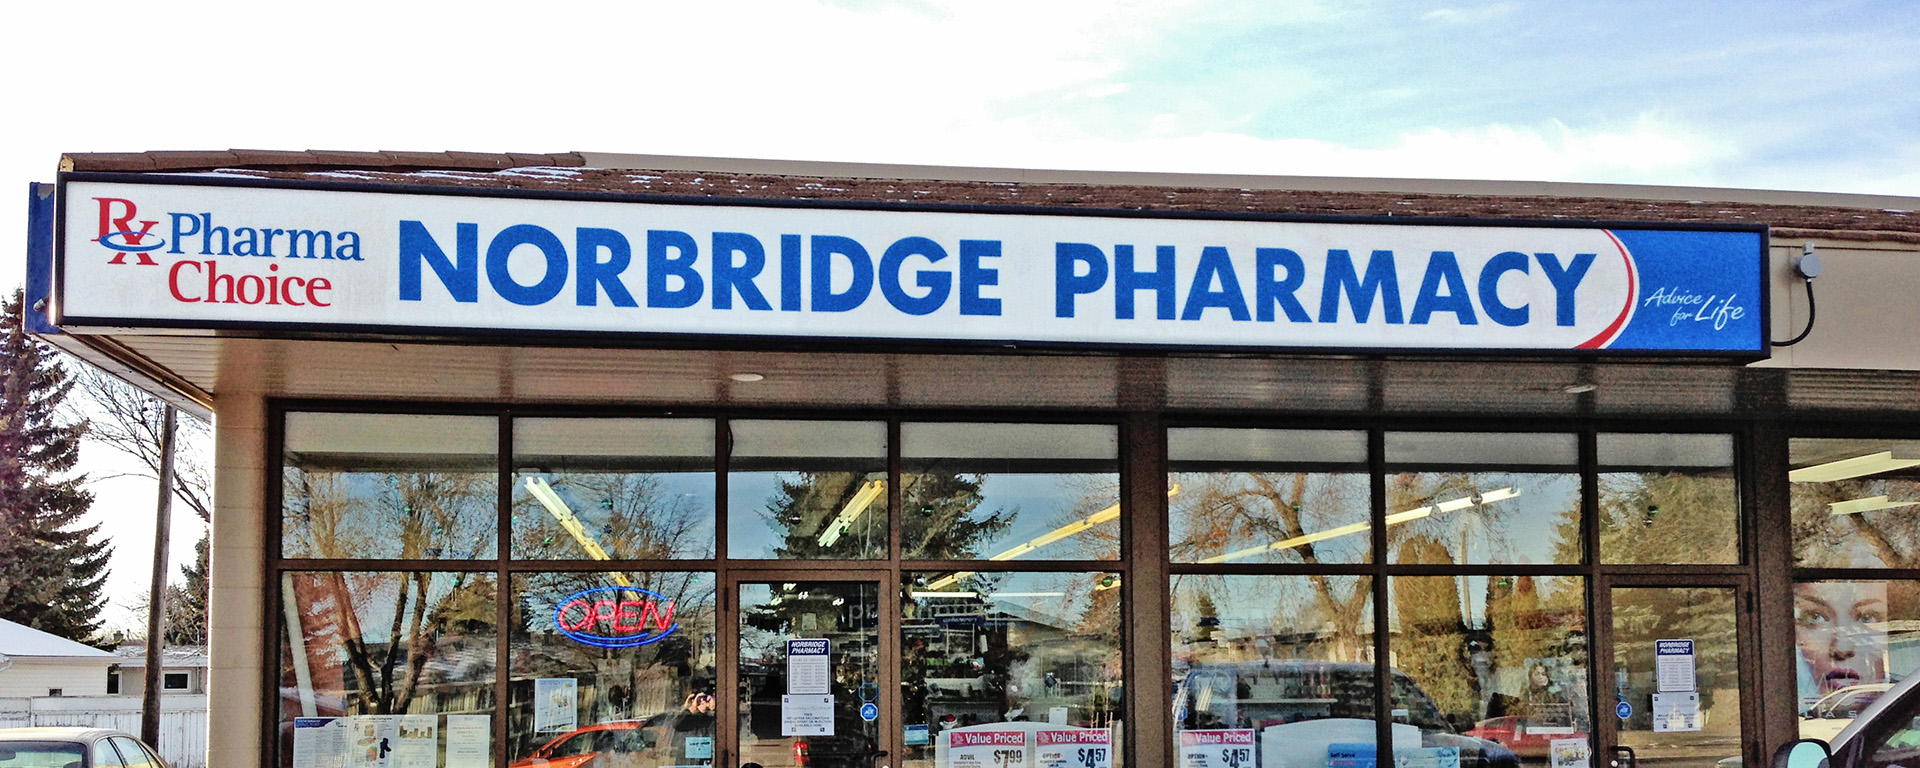 Exterior of Norbridge Pharmacy PharmaChoice in Lethbridge, AB 